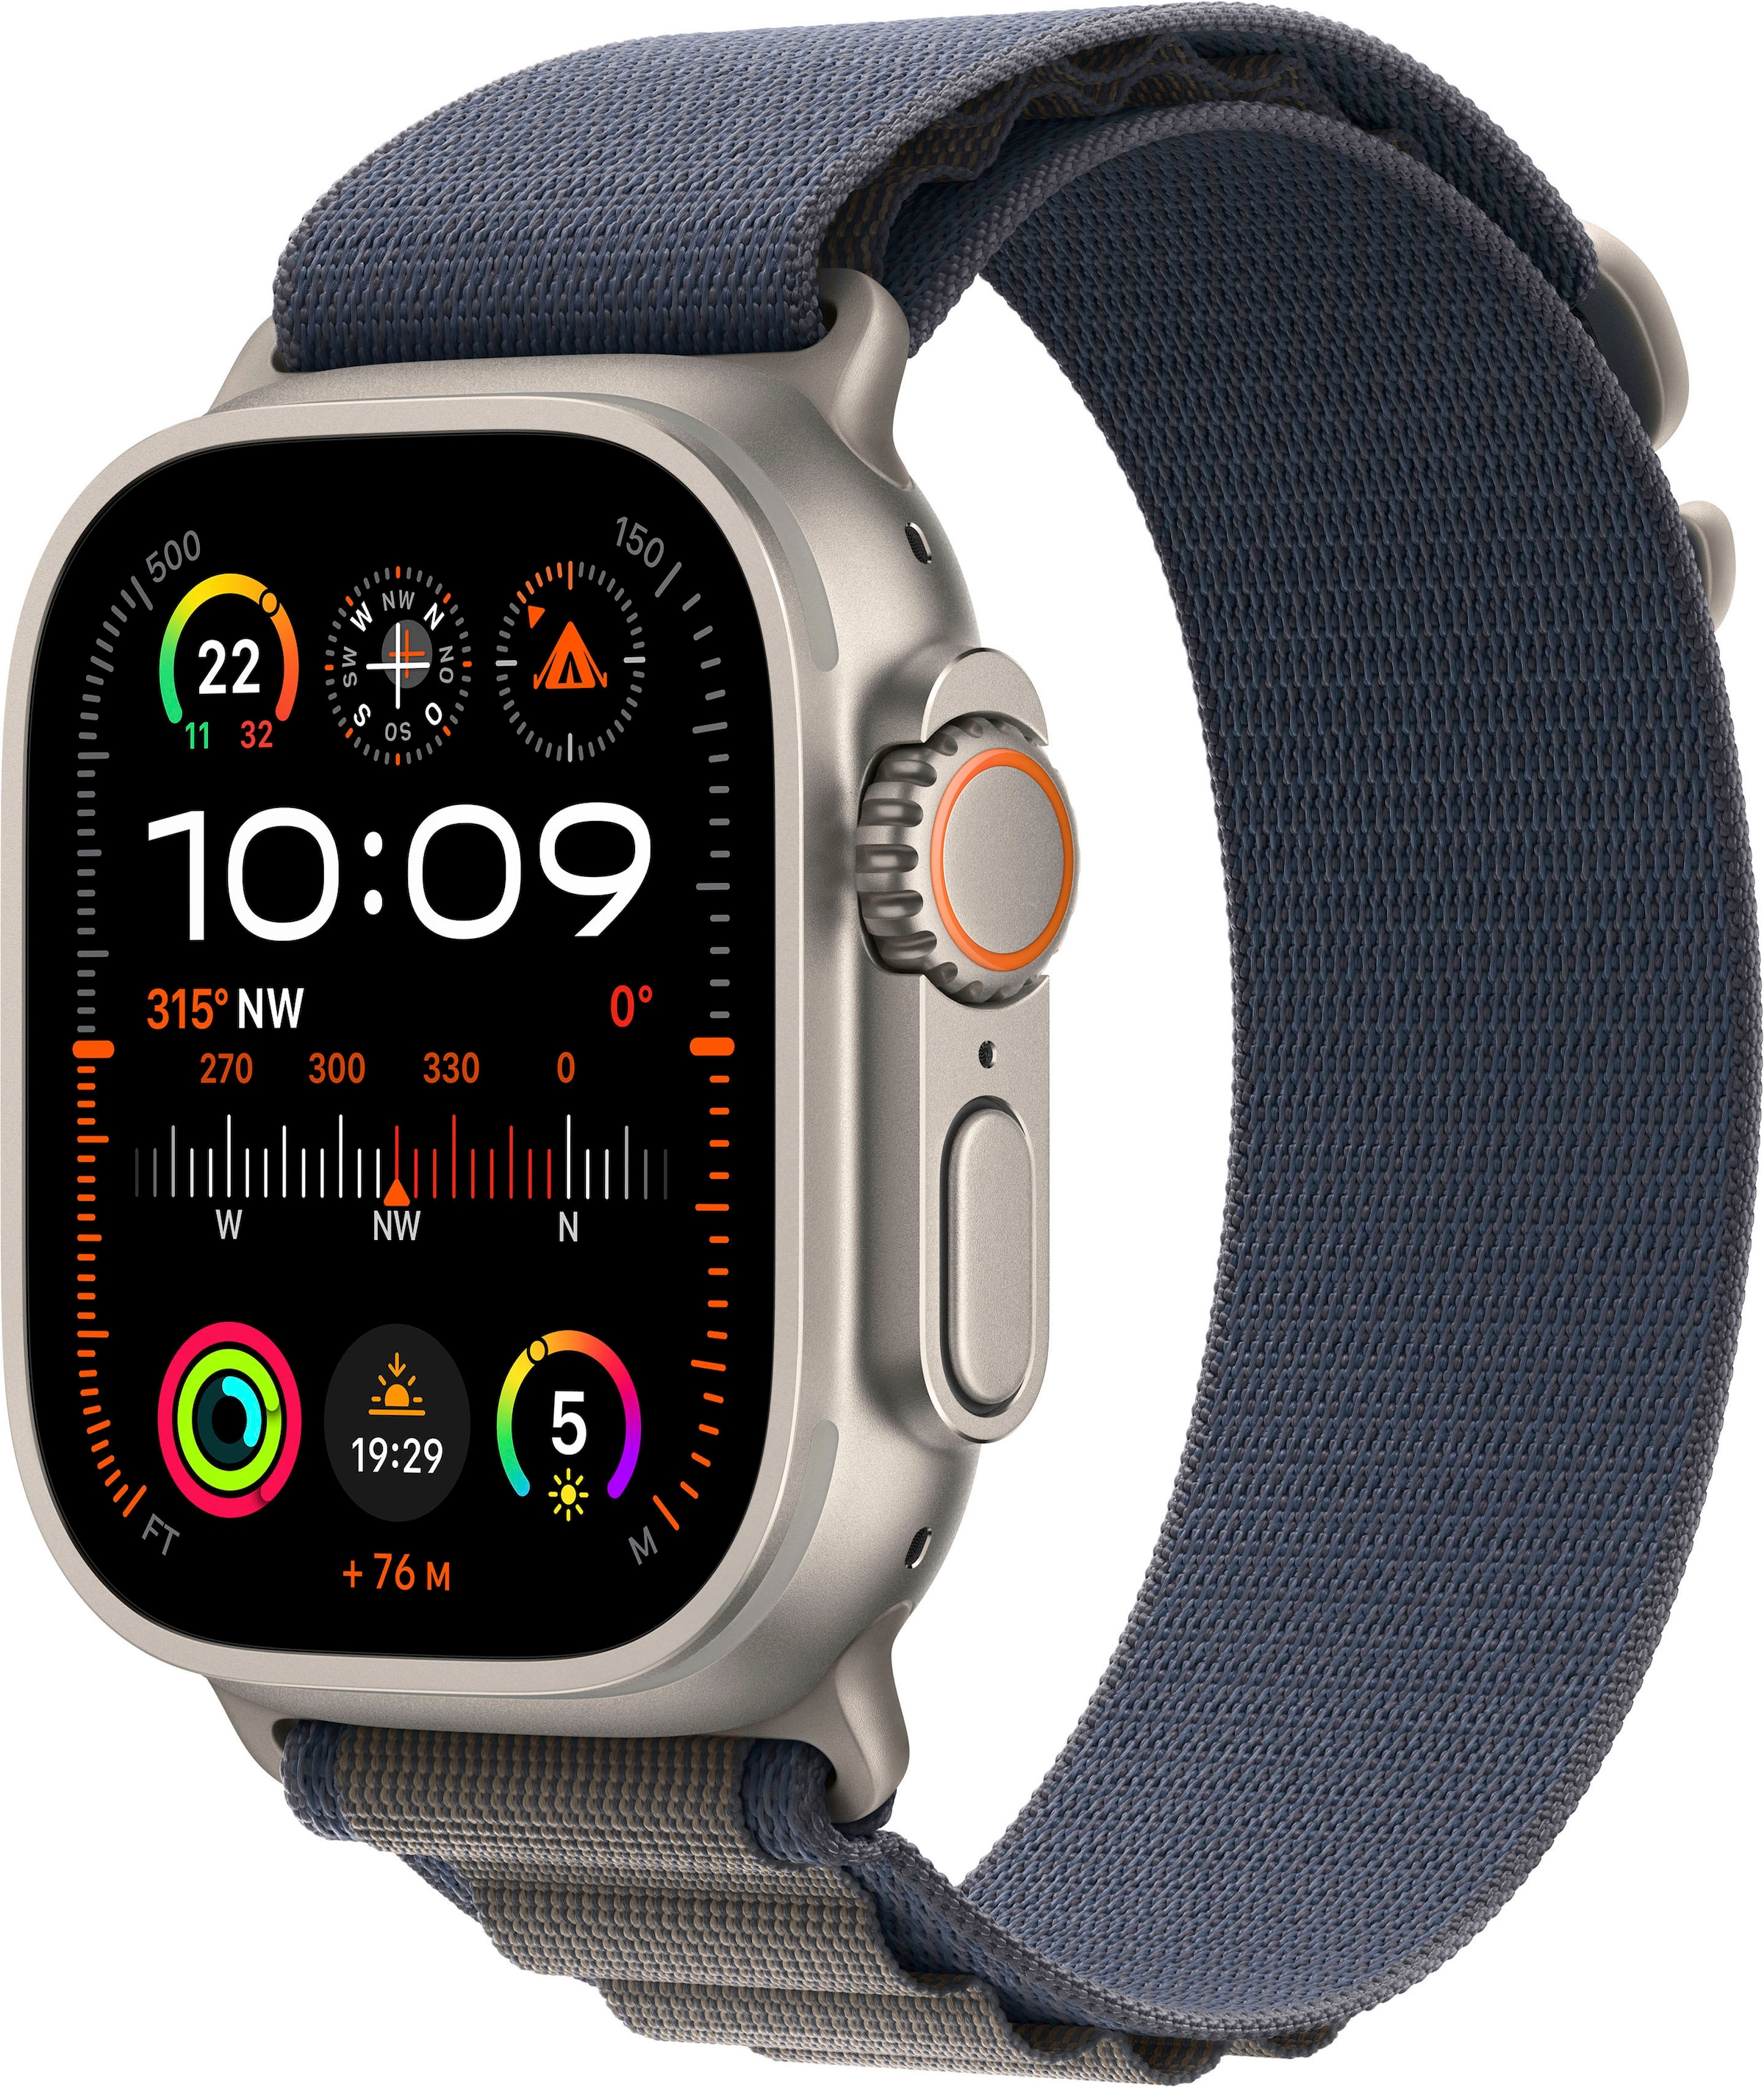 Loop) Medium«, Titanium im OS mm 10 + Apple »Watch 2 Cellular GPS Smartwatch Online-Shop 49 Alpine Ultra (Watch kaufen